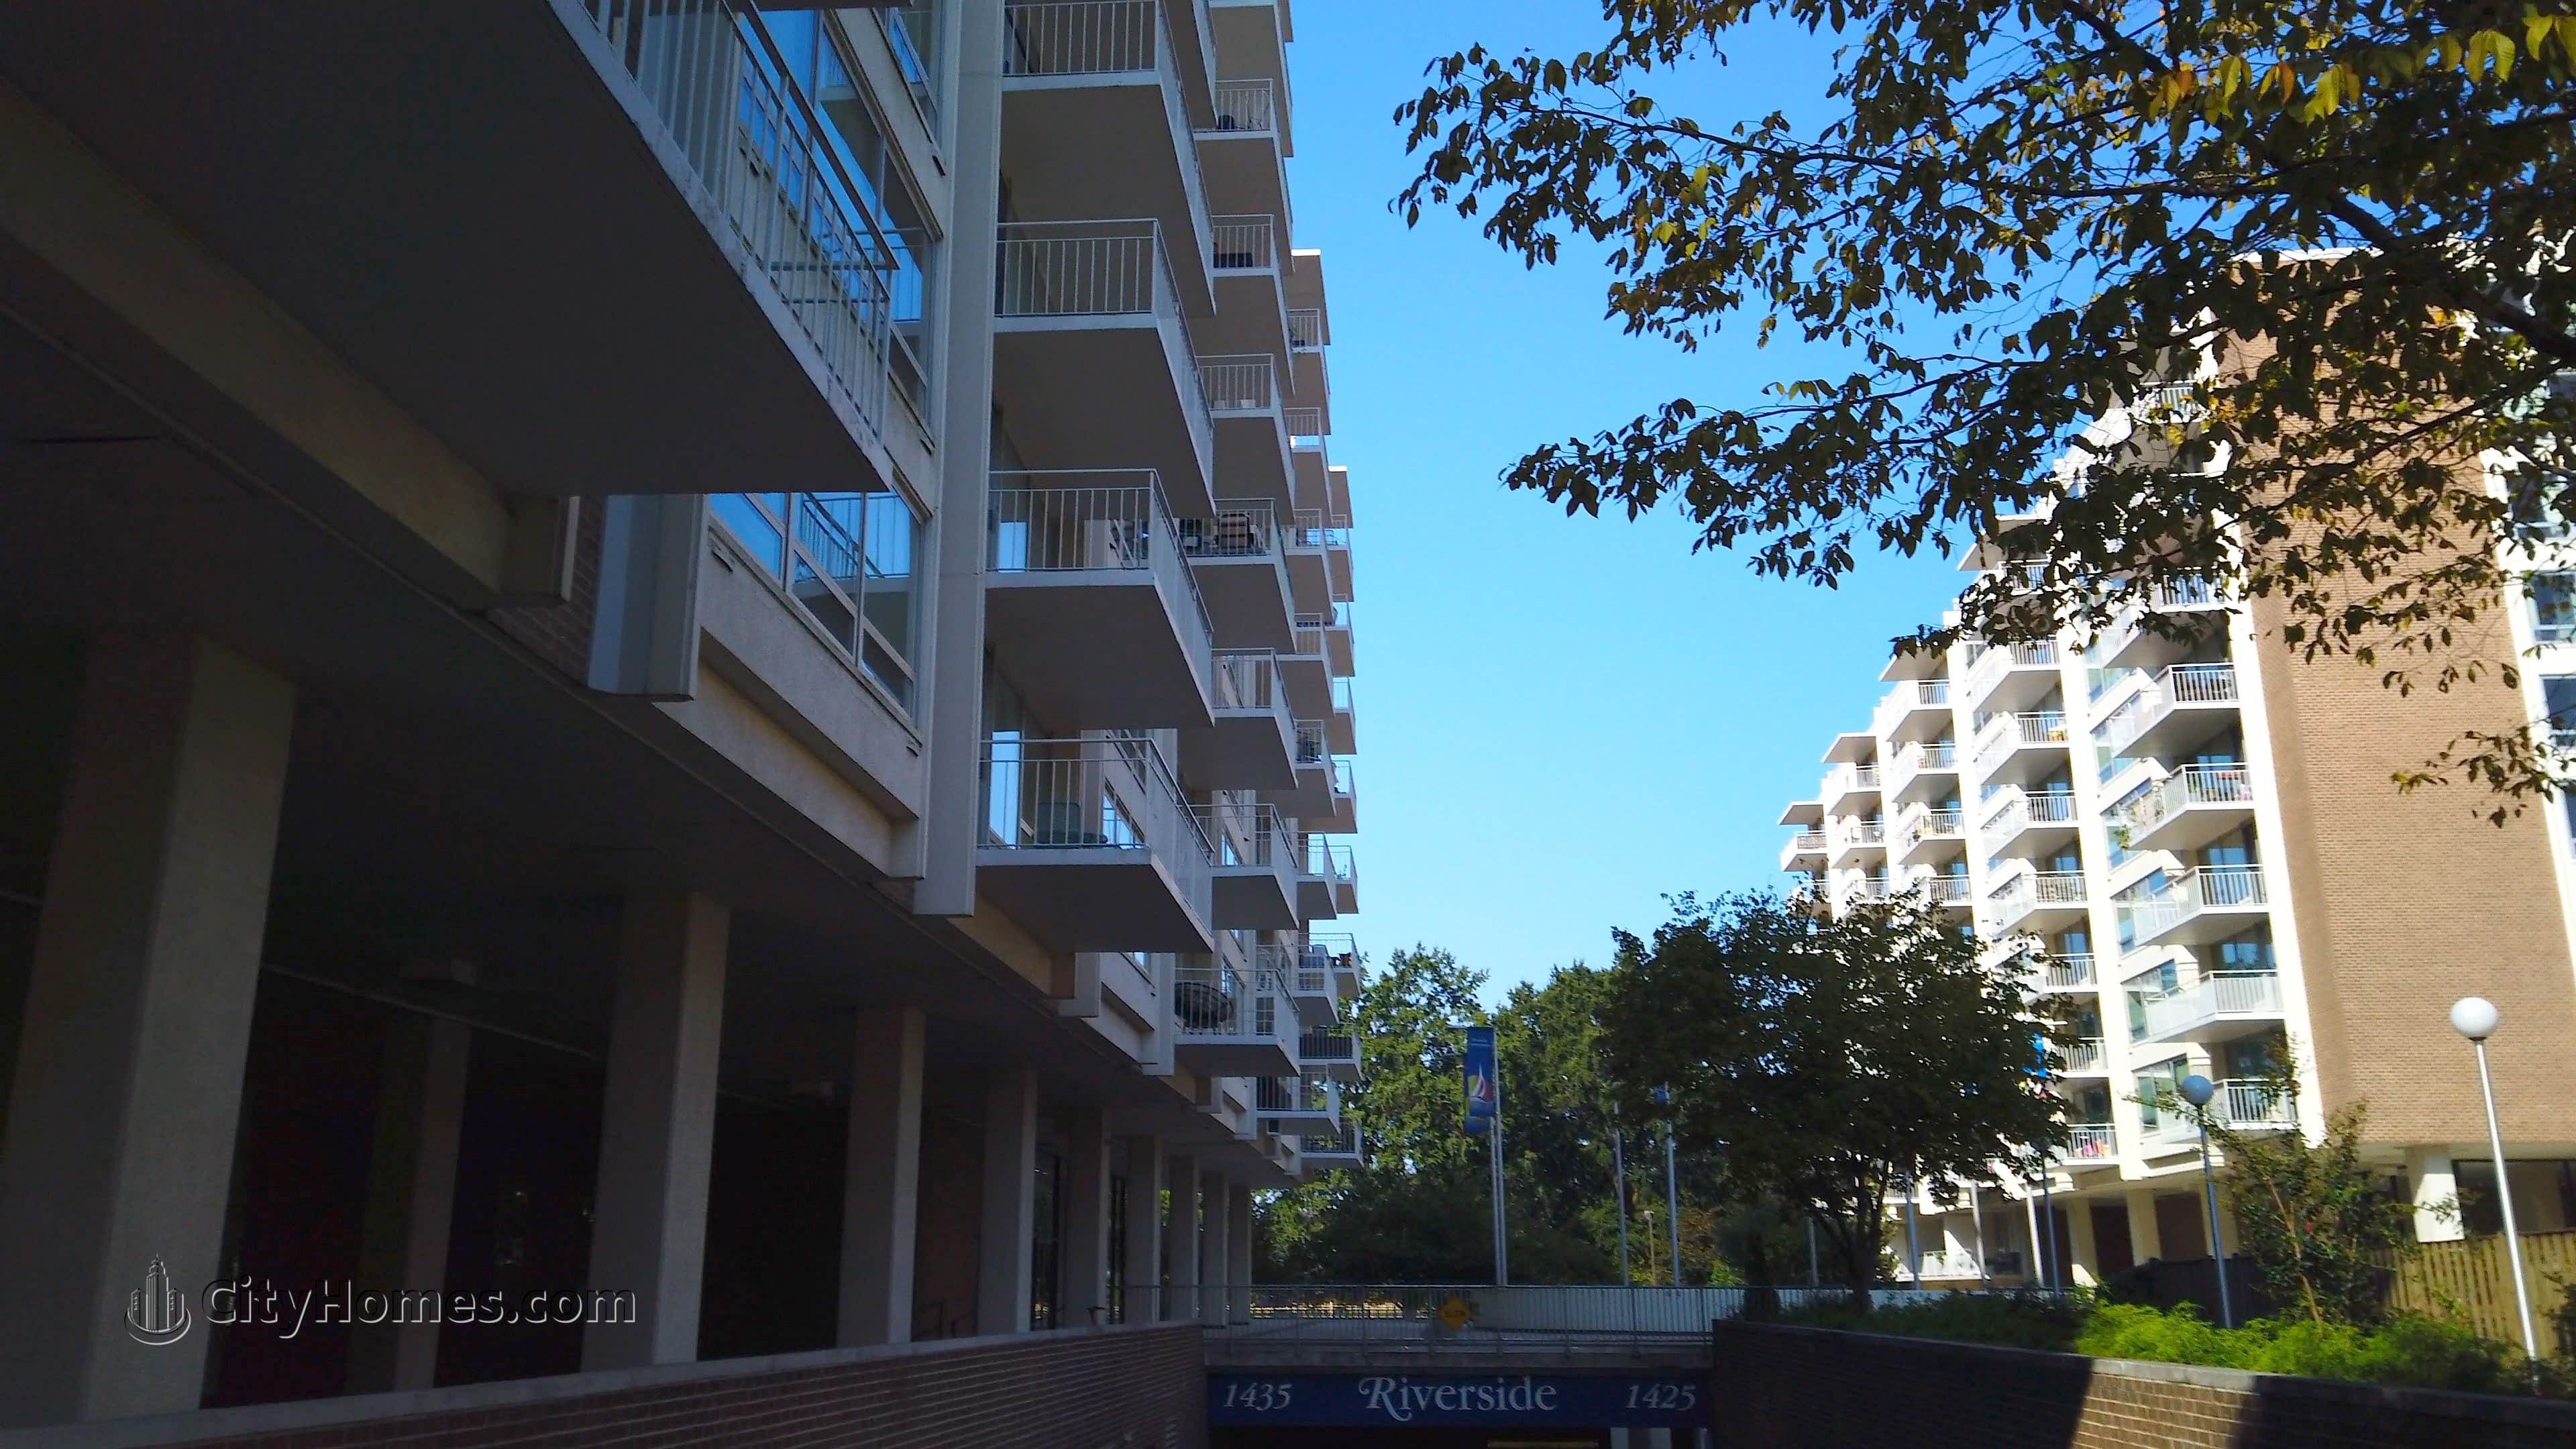 8. Riverside Condominiums bâtiment à 1425 & 1435 4th St NW, Southwest / Waterfront, Washington, DC 20024